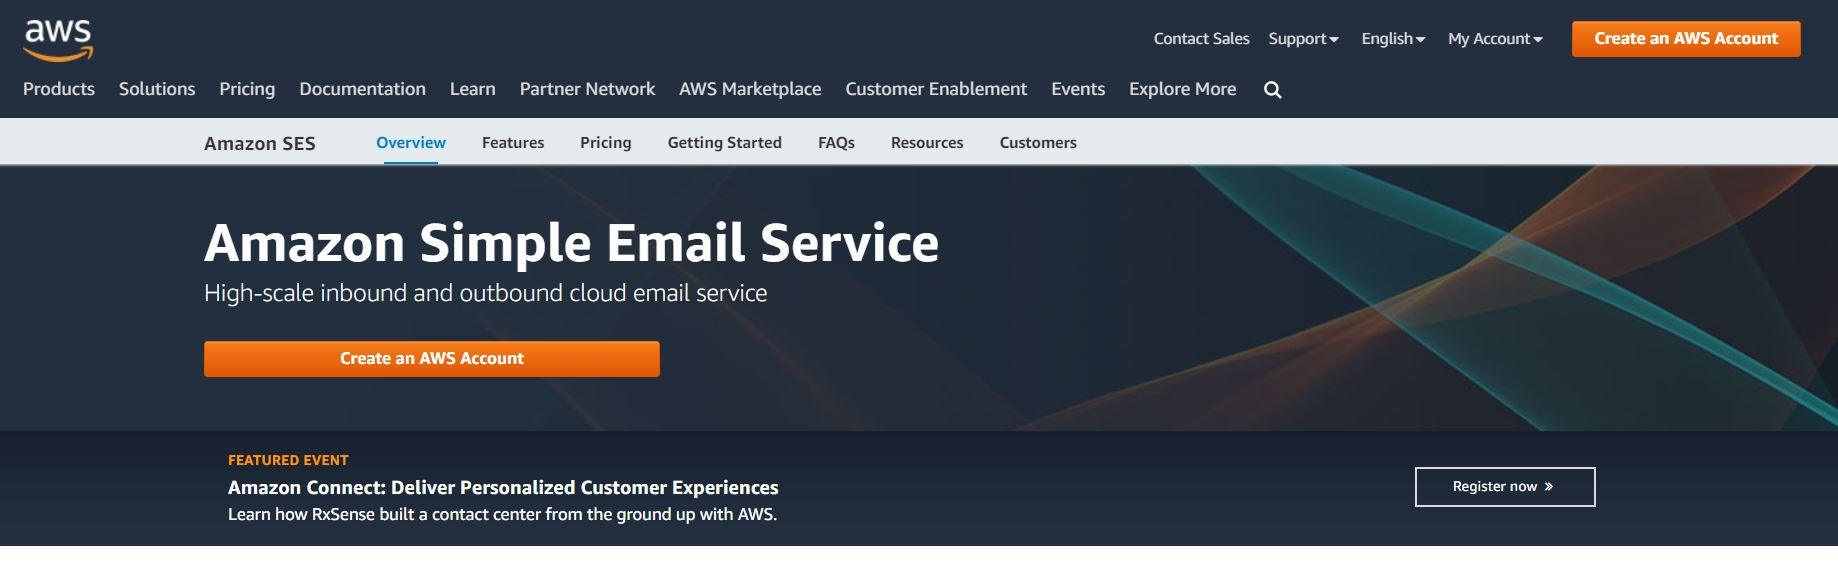 Le système avancé basé sur le cloud d'Amazon SES en fait l'un des meilleurs expéditeurs d'e-mails de masse